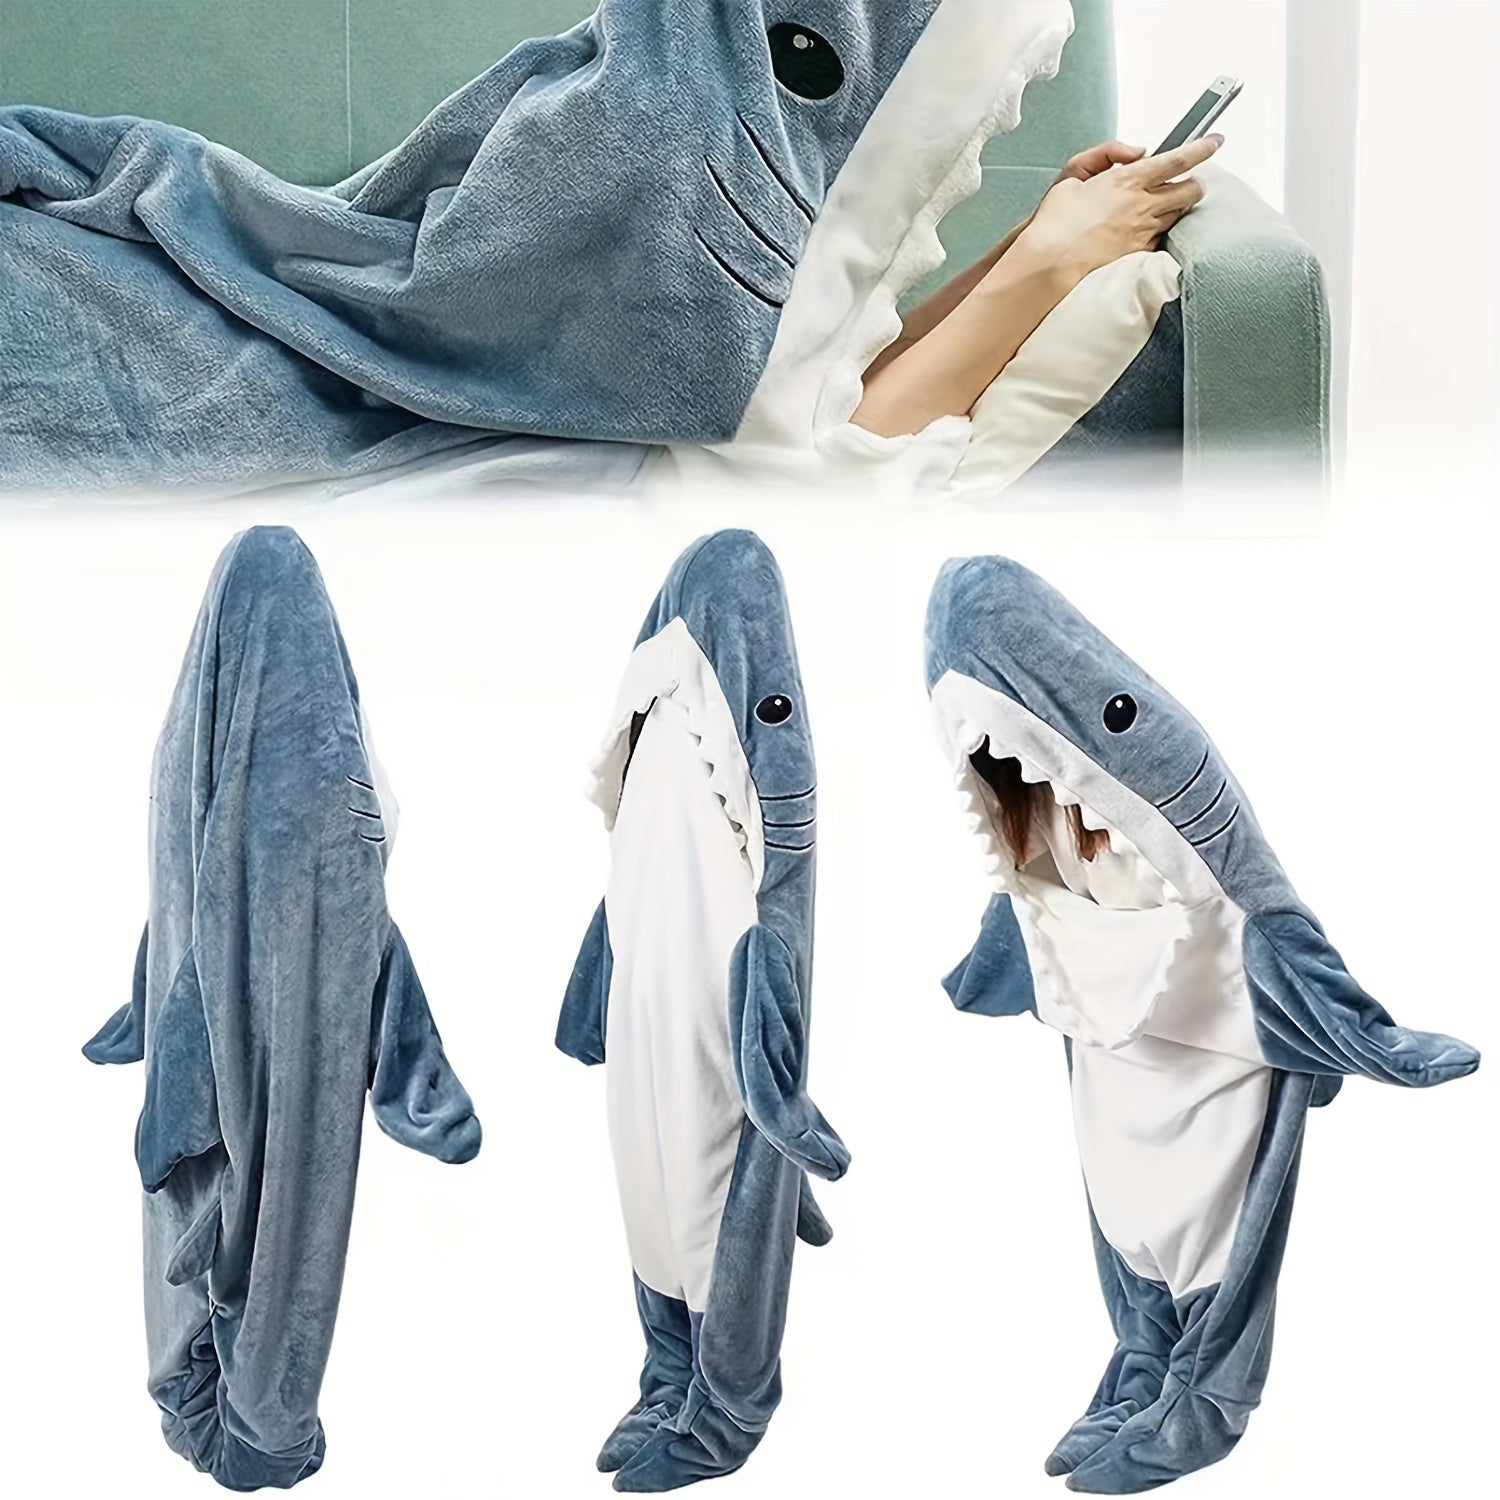 Shark Blanket